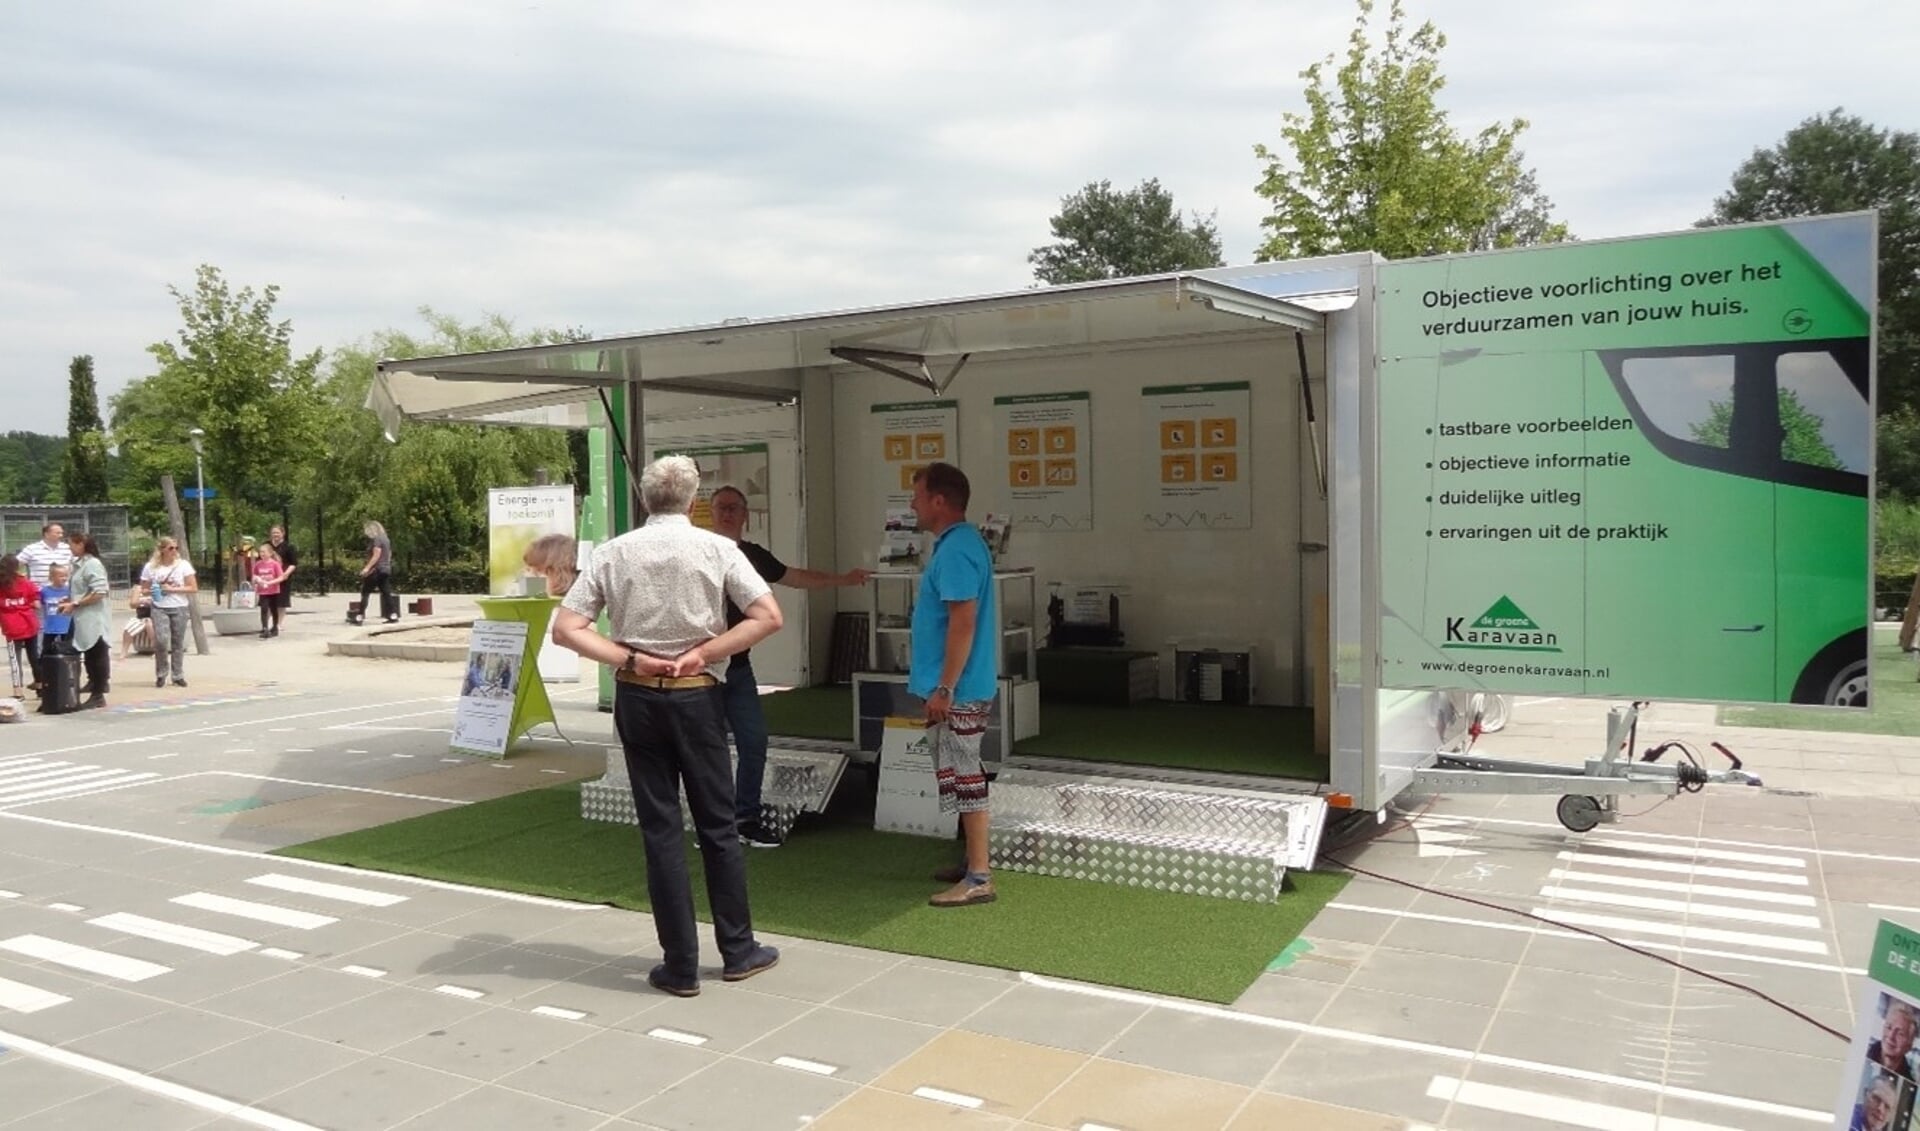  De Groene Karavaan is een mobiele expositie van groene energiemaatregelen. (Foto: aangeleverd)